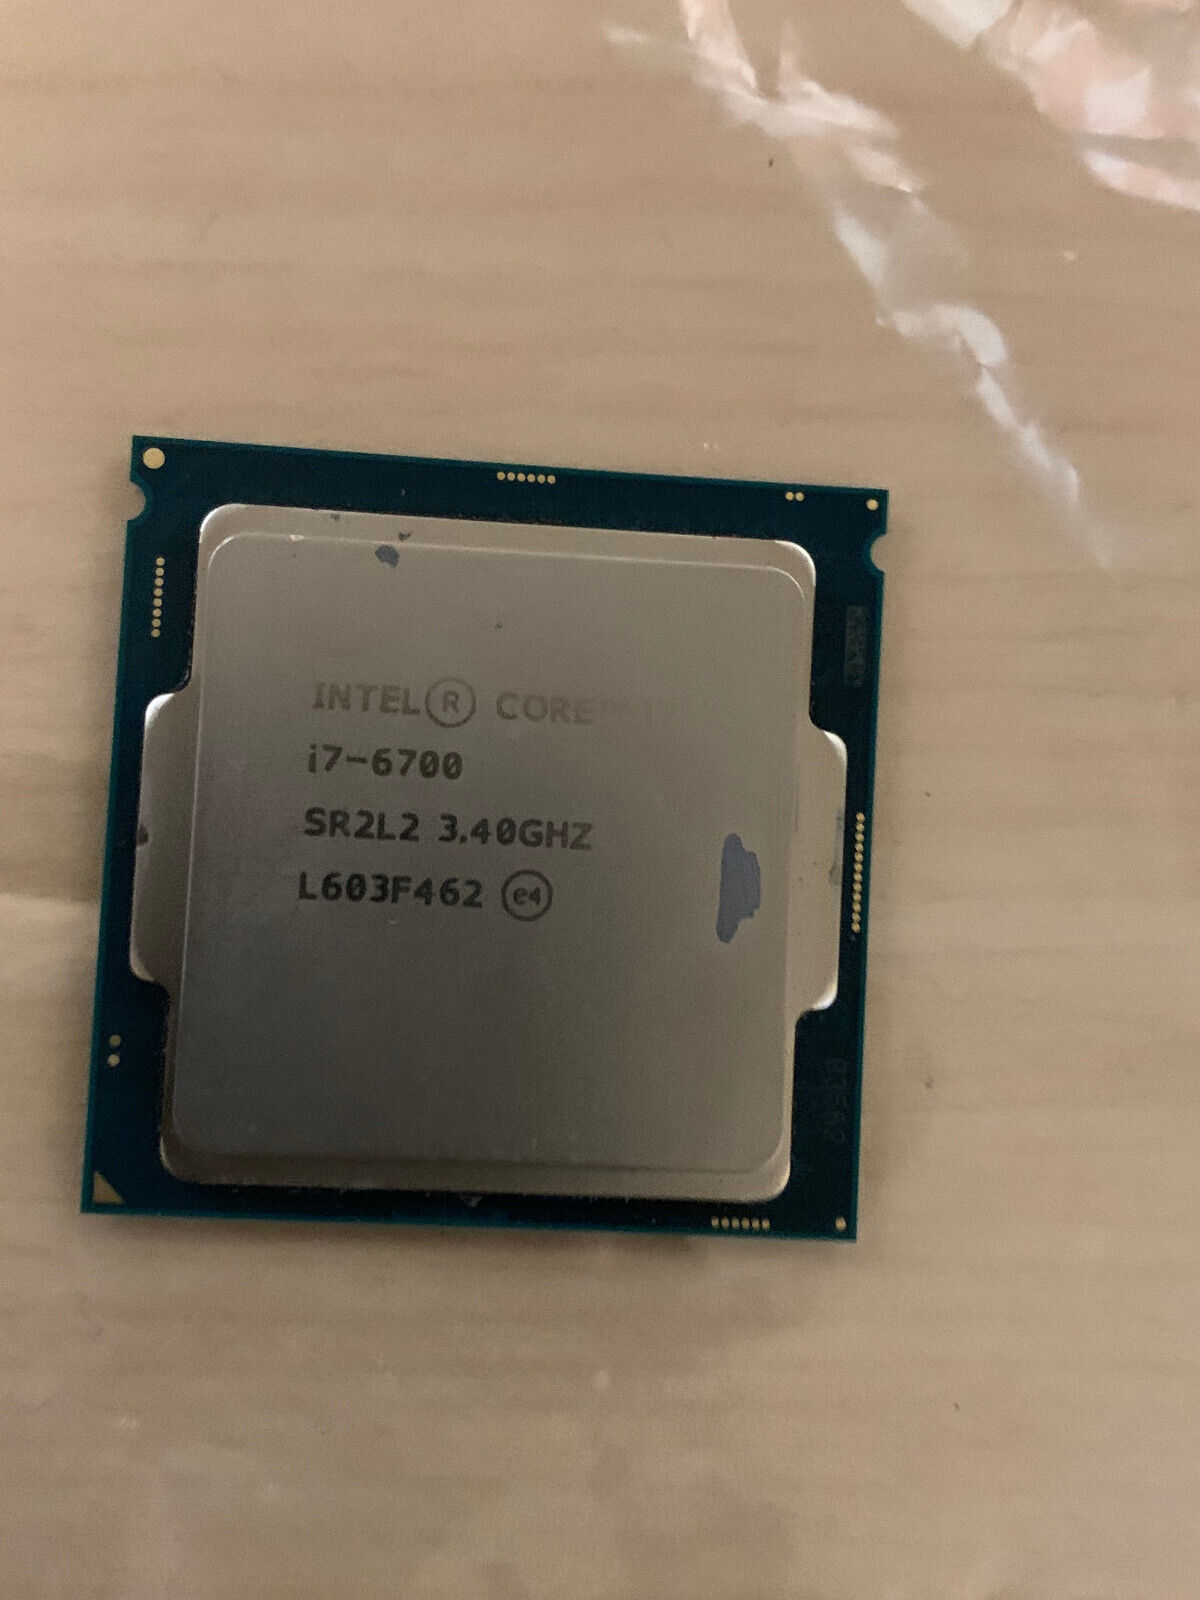 Intel Core i7-6700 SR2L2 4.00 GHz LGA 1151 Quad-Core Processor